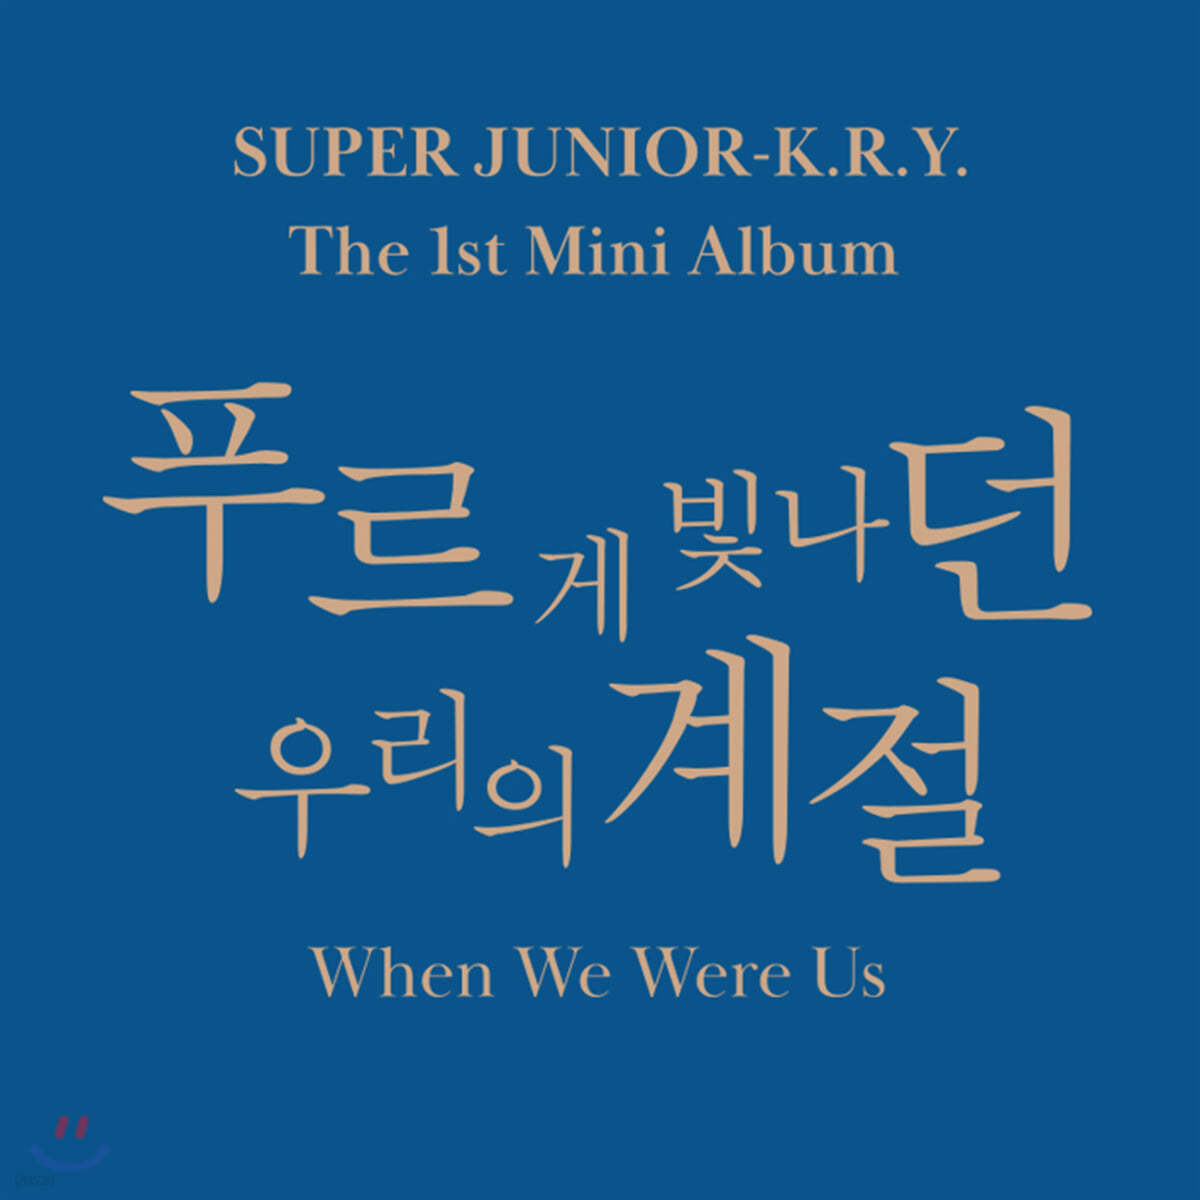 슈퍼주니어-K.R.Y. (Super Junior-K.R.Y.) -  미니앨범 1집 : 푸르게 빛나던 우리의 계절 (When We Were Us) [2종 중 랜덤 1종 발송] 